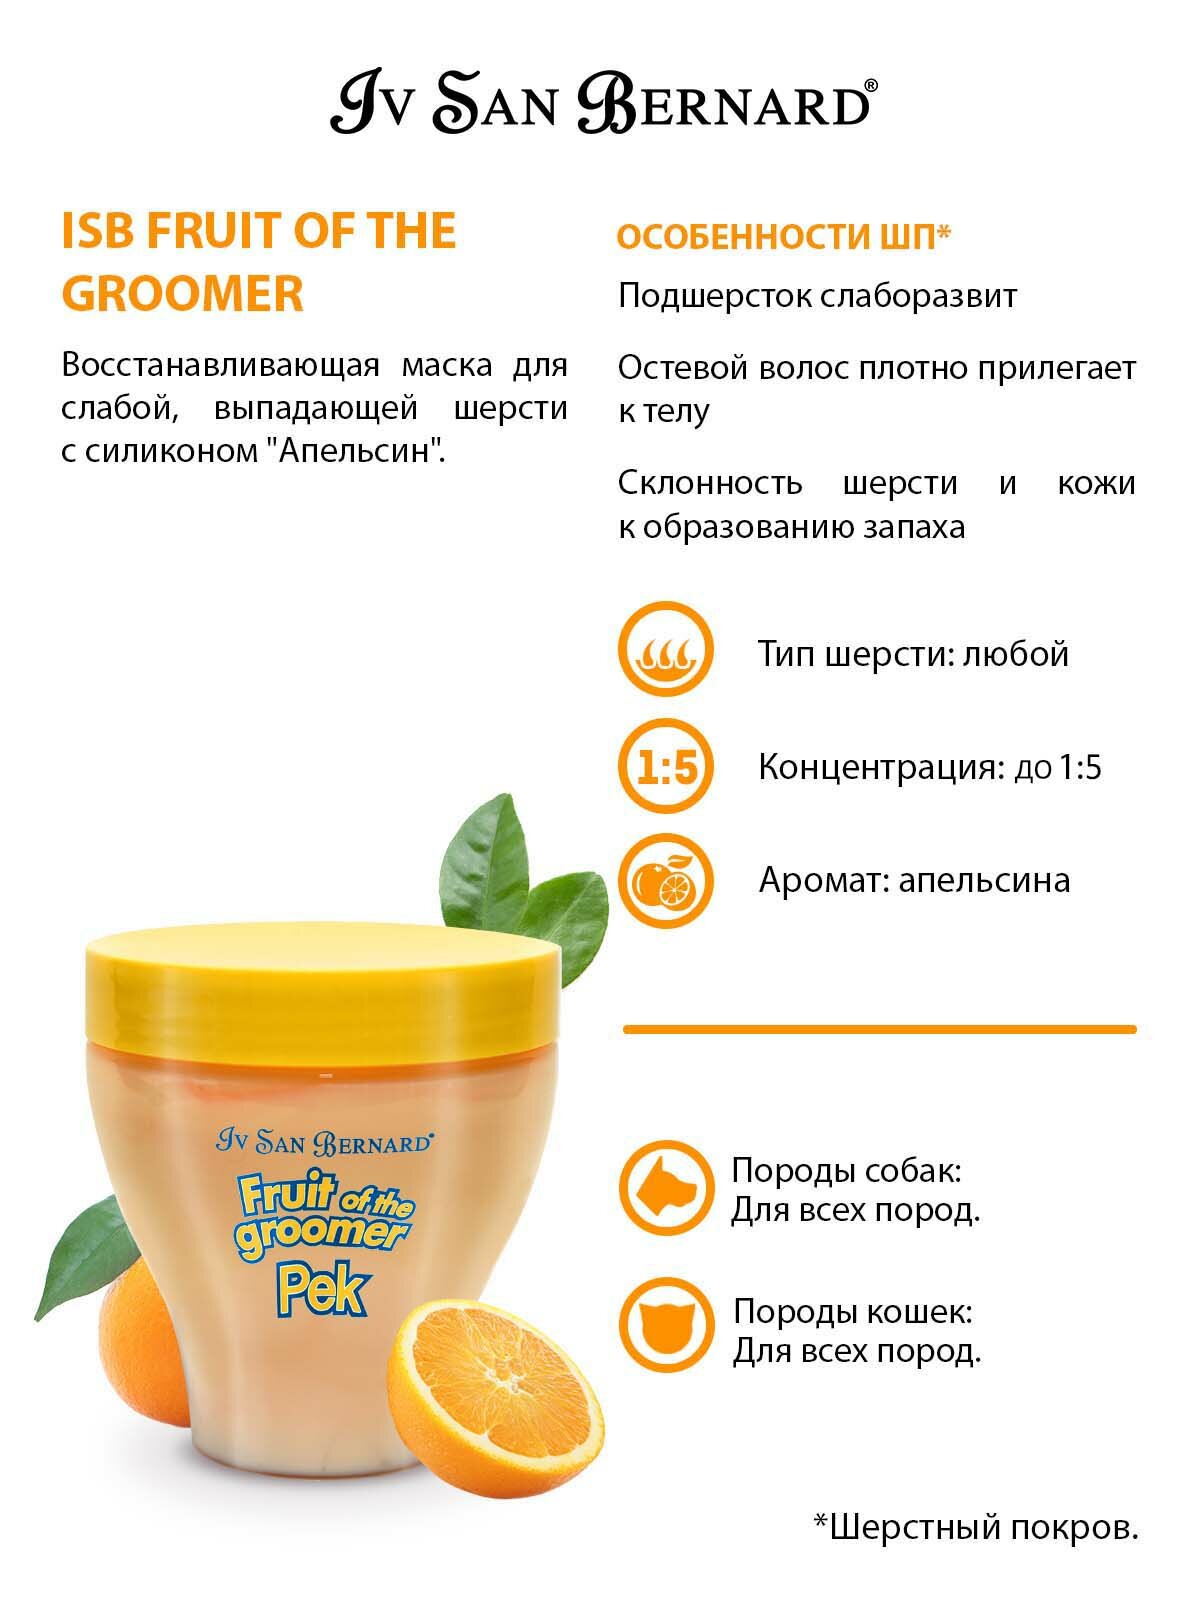 Iv San Bernard Fruit of the Grommer Orange Восстанавливающая маска для слабой выпадающей шерсти с силиконом, 250мл